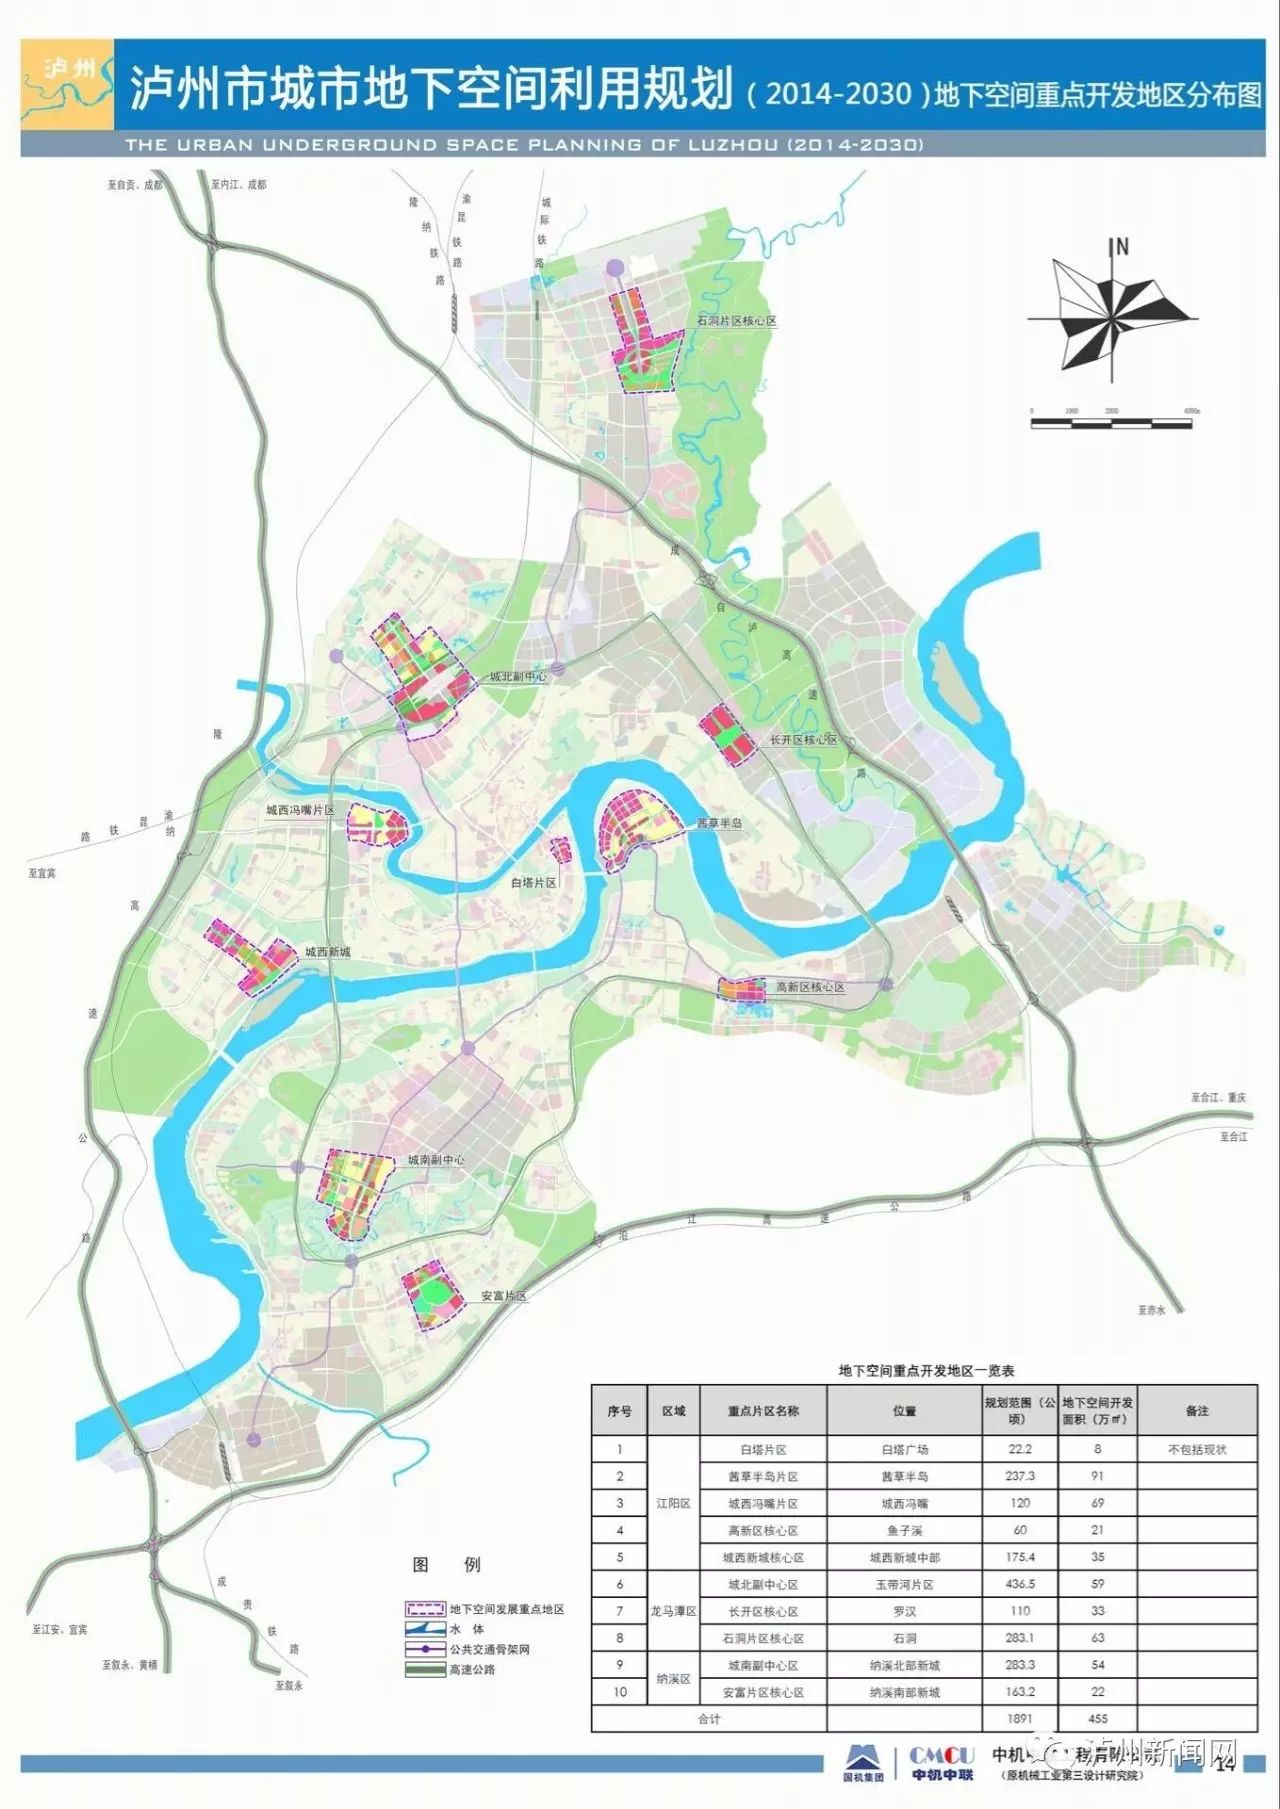 《泸州市城市地下空间利用规划(2014-2030)》(以下简称《方案》)近日